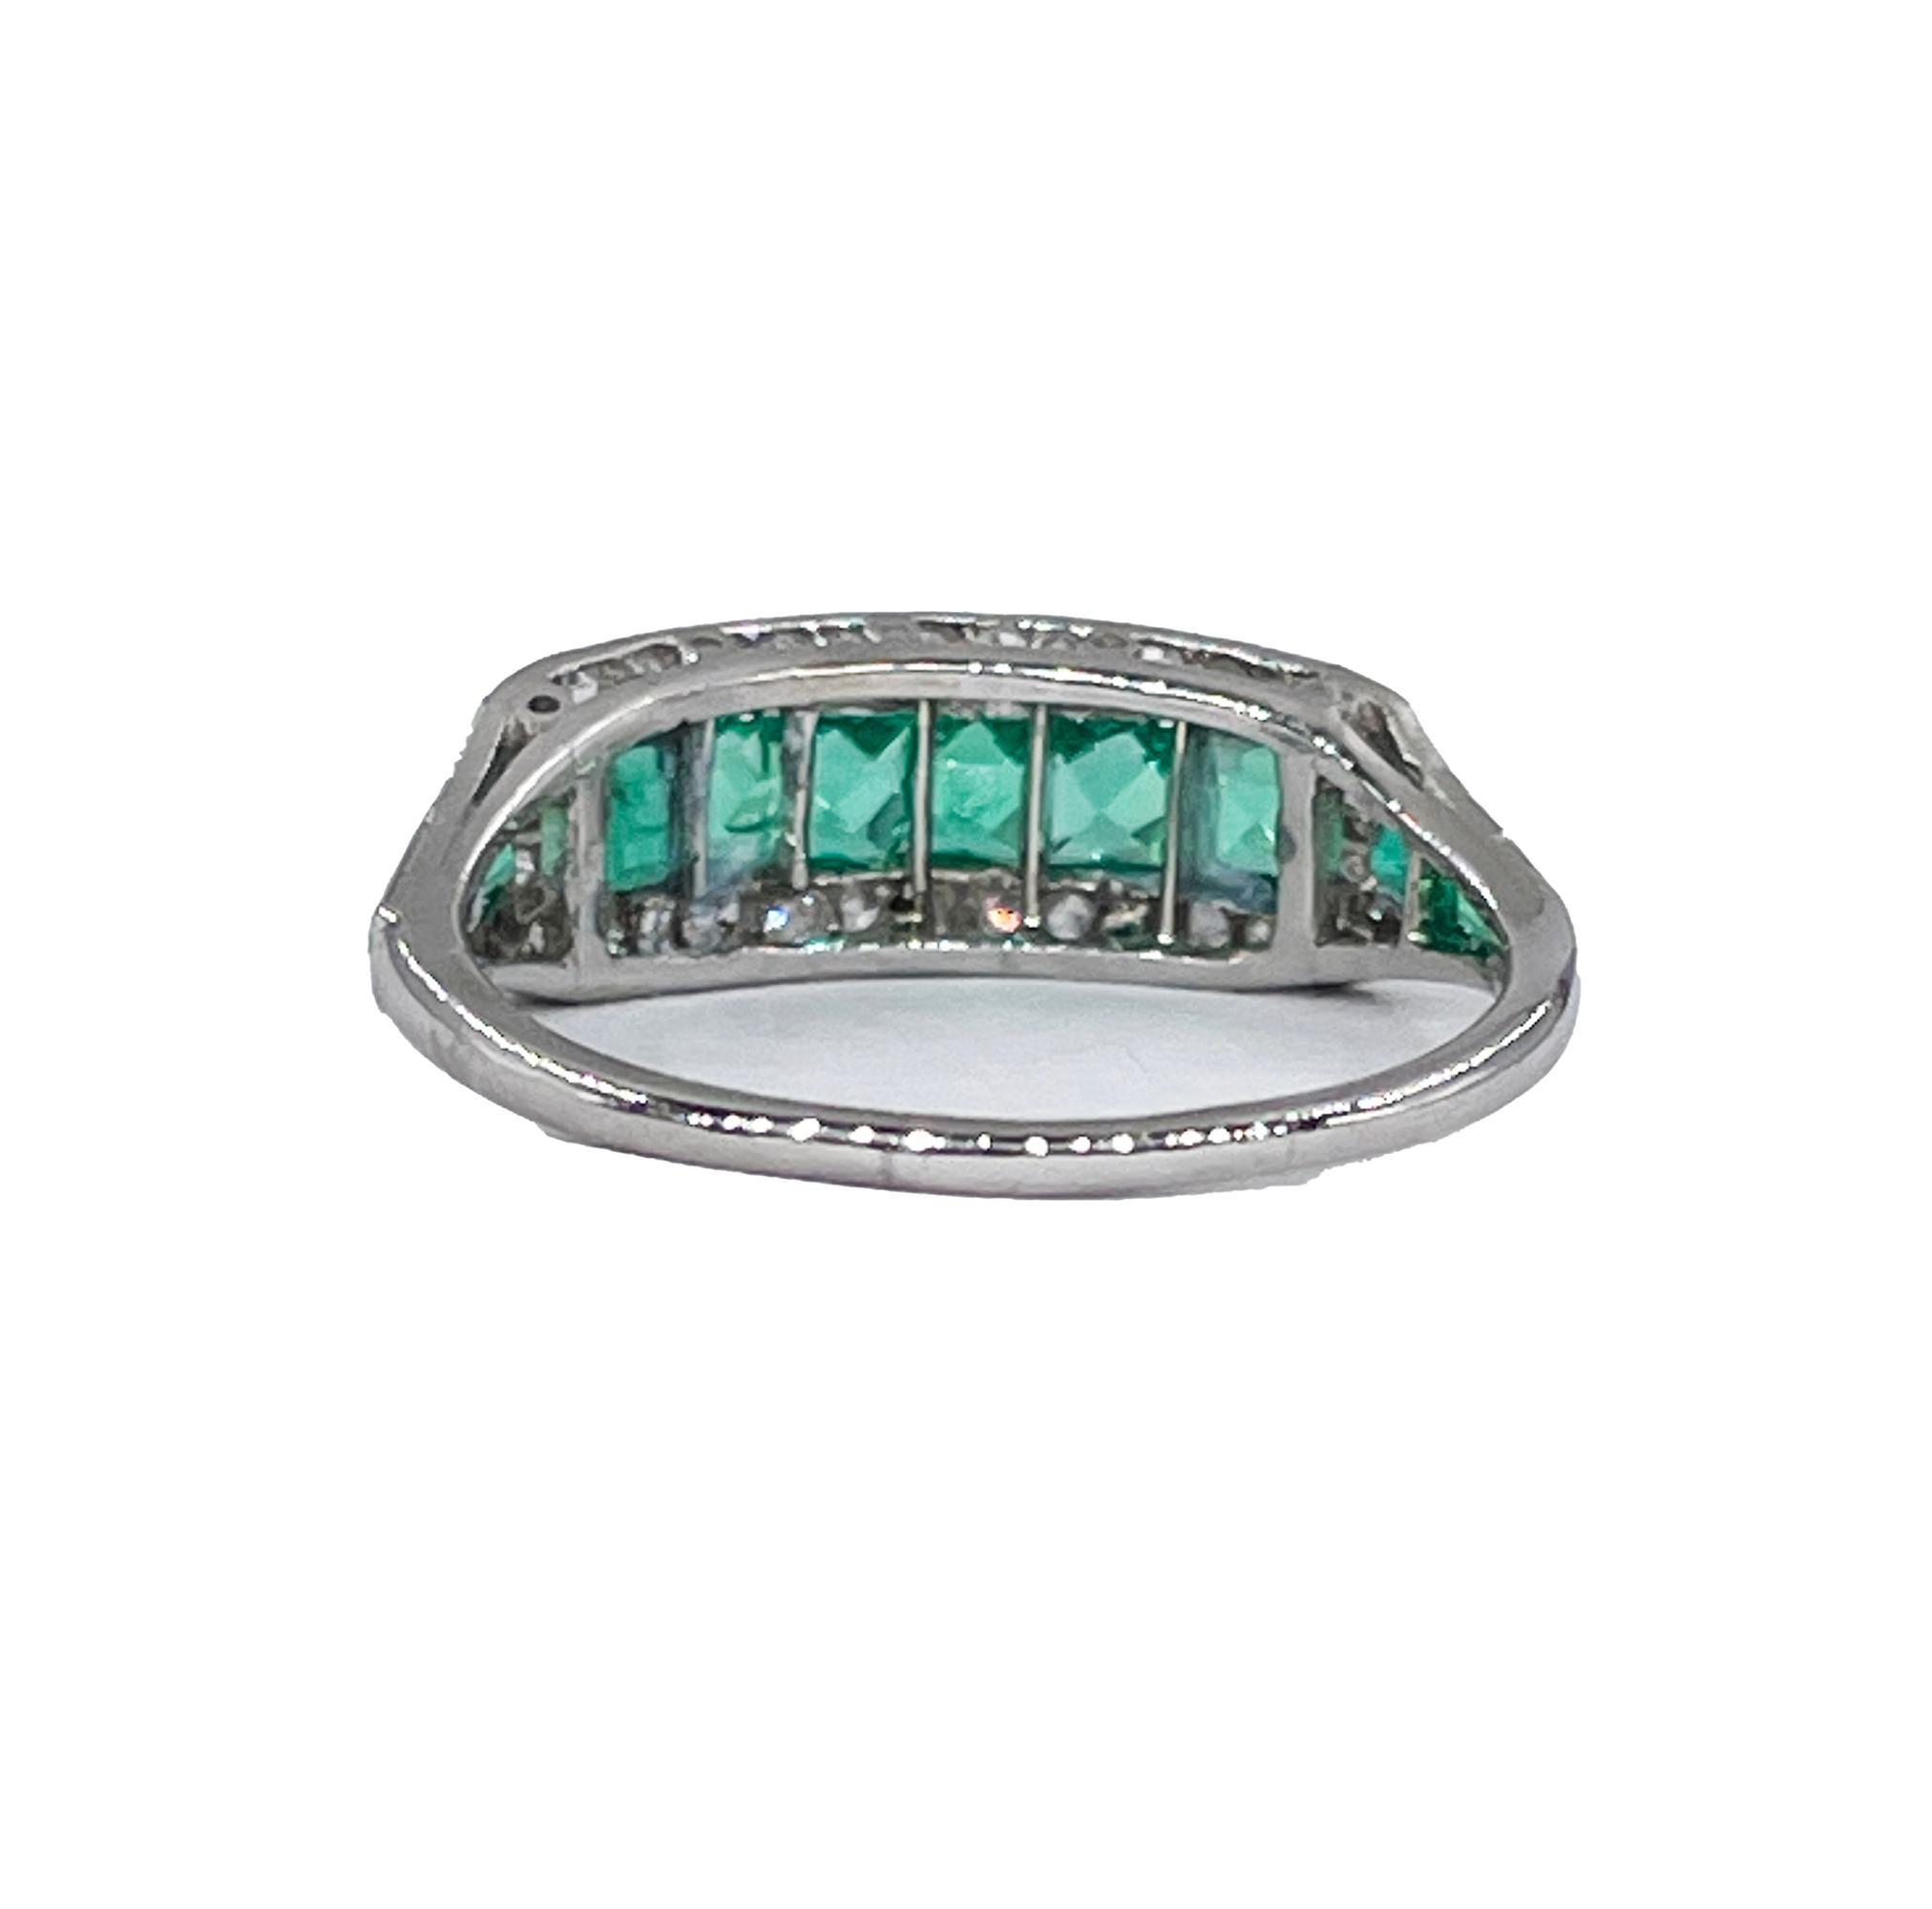 Antike Art Deco 1,30ct Smaragd & Diamant Hochzeit Verlobung Jahrestag Platin Ring Band.

Verschenken Sie ein schickes und wirklich prächtiges, nicht alltägliches, originelles Juwel des späten Art déco. 
Dieser kostbare Ring in herrlichem Grün und